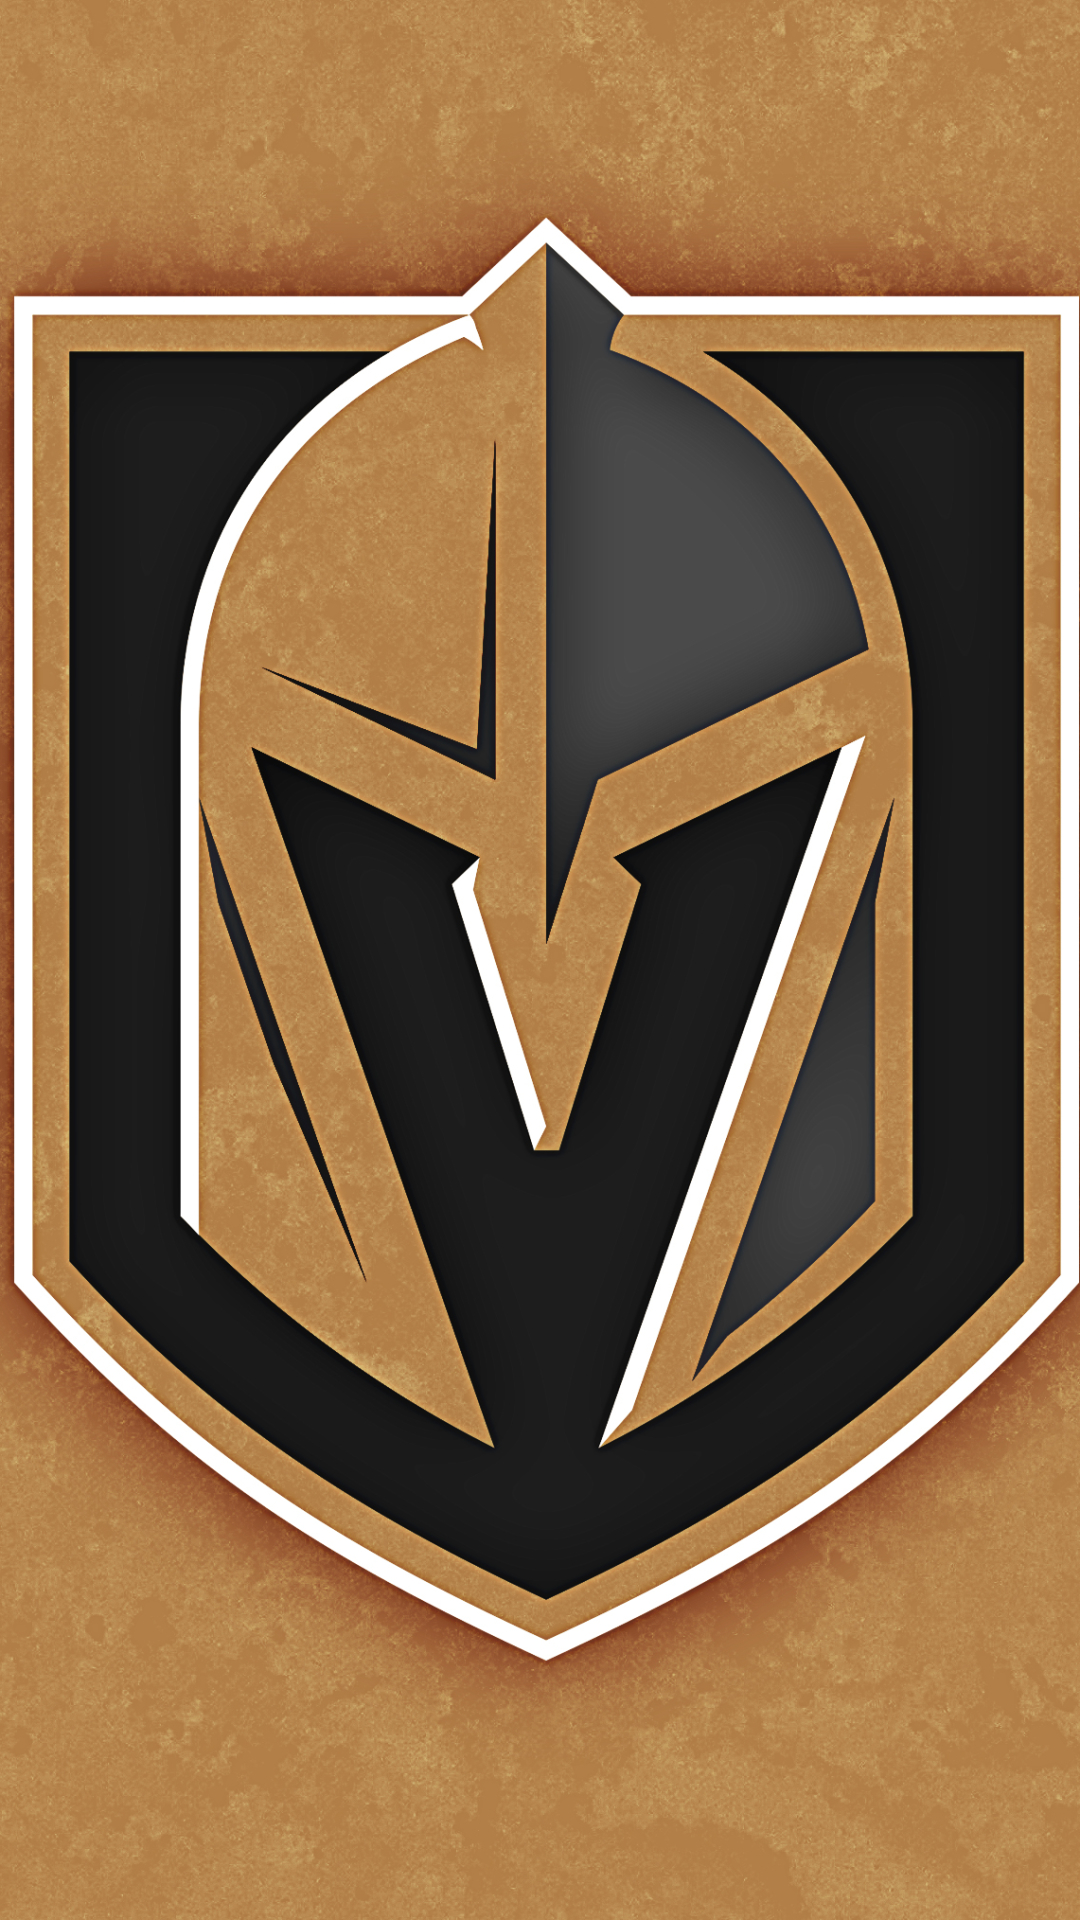 vegas golden knights, sports, emblem, nhl, logo, hockey